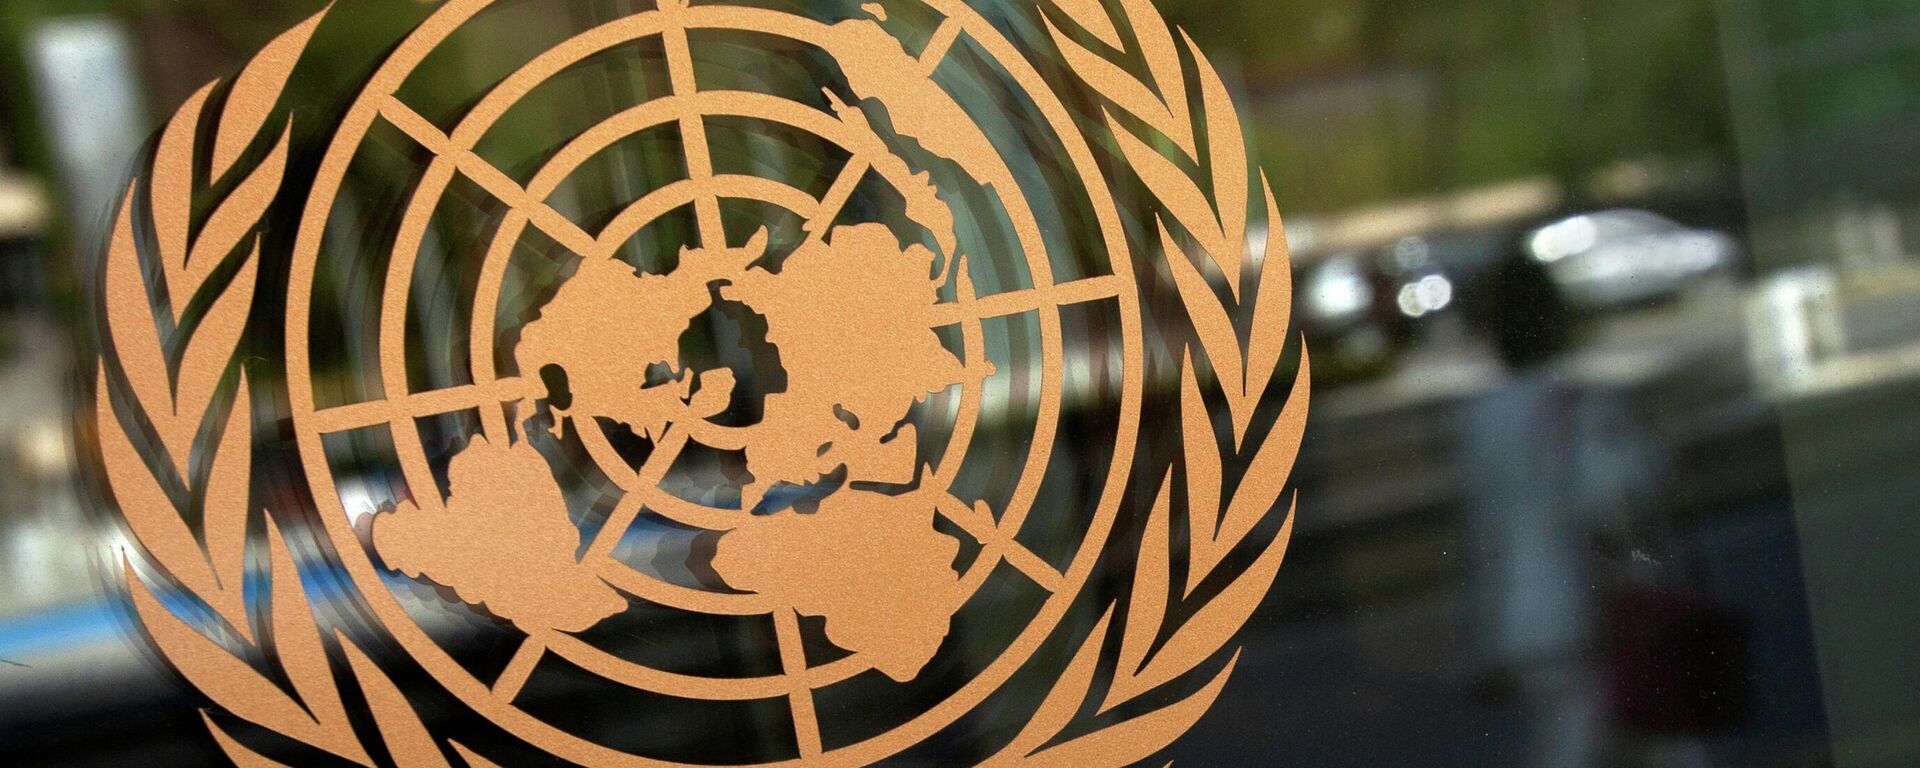 El logo de la ONU - Sputnik Mundo, 1920, 24.10.2021